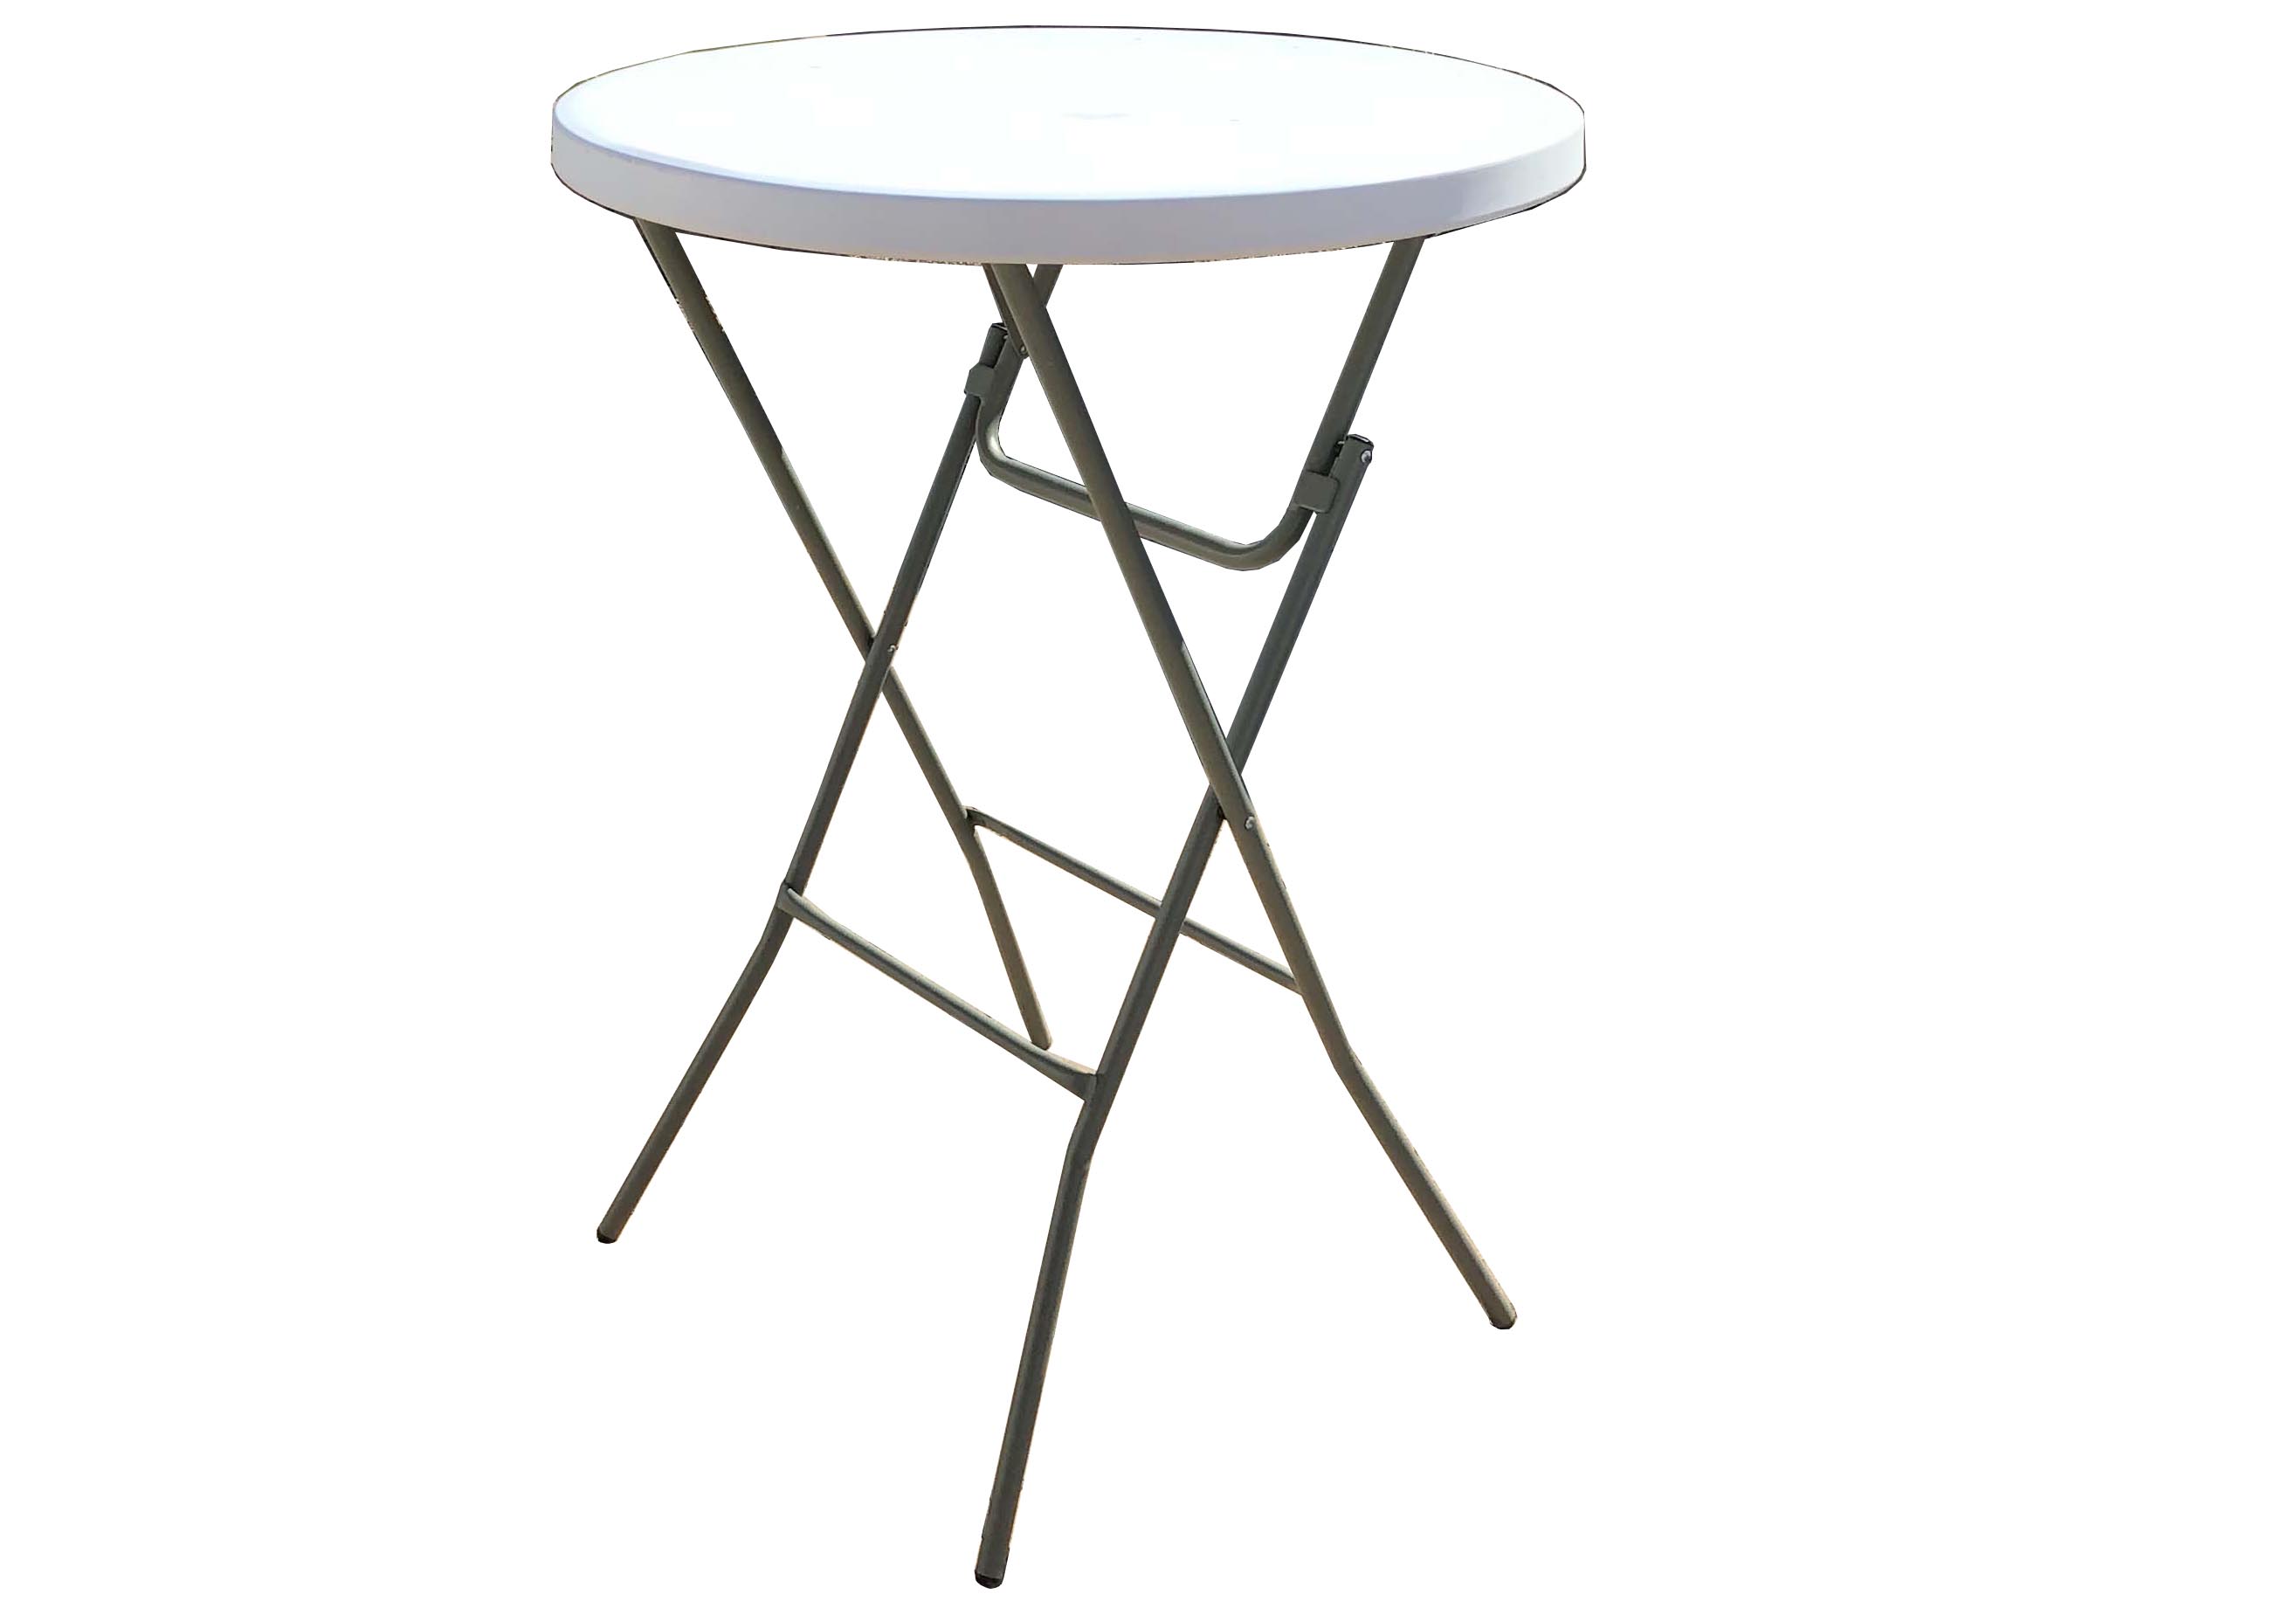 31 inch round pedestal tables